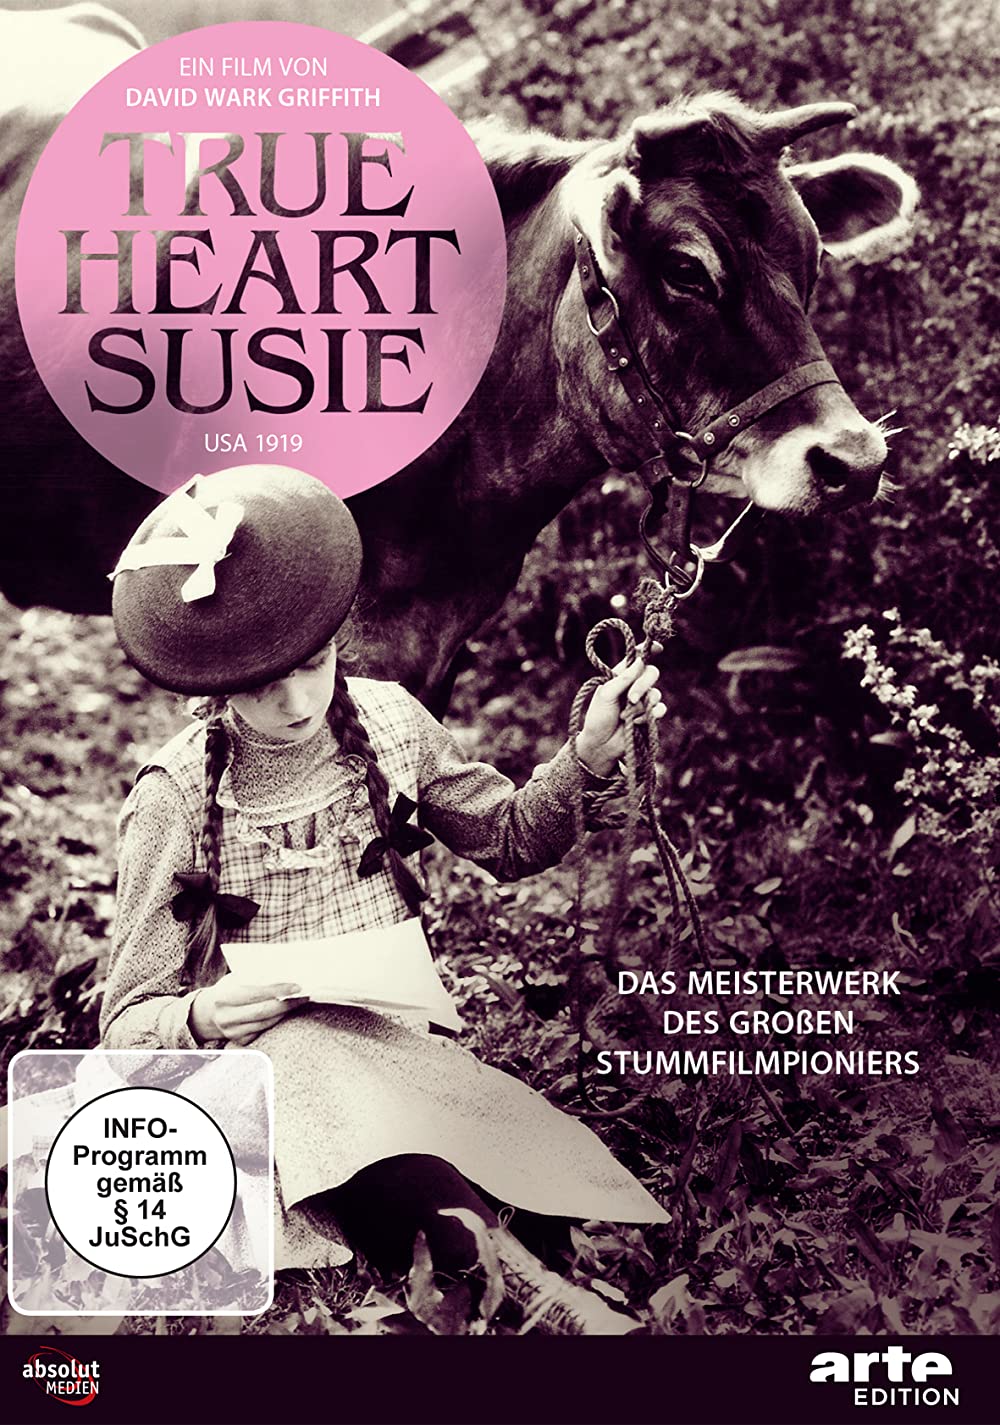 Filmbeschreibung zu True Heart Susie